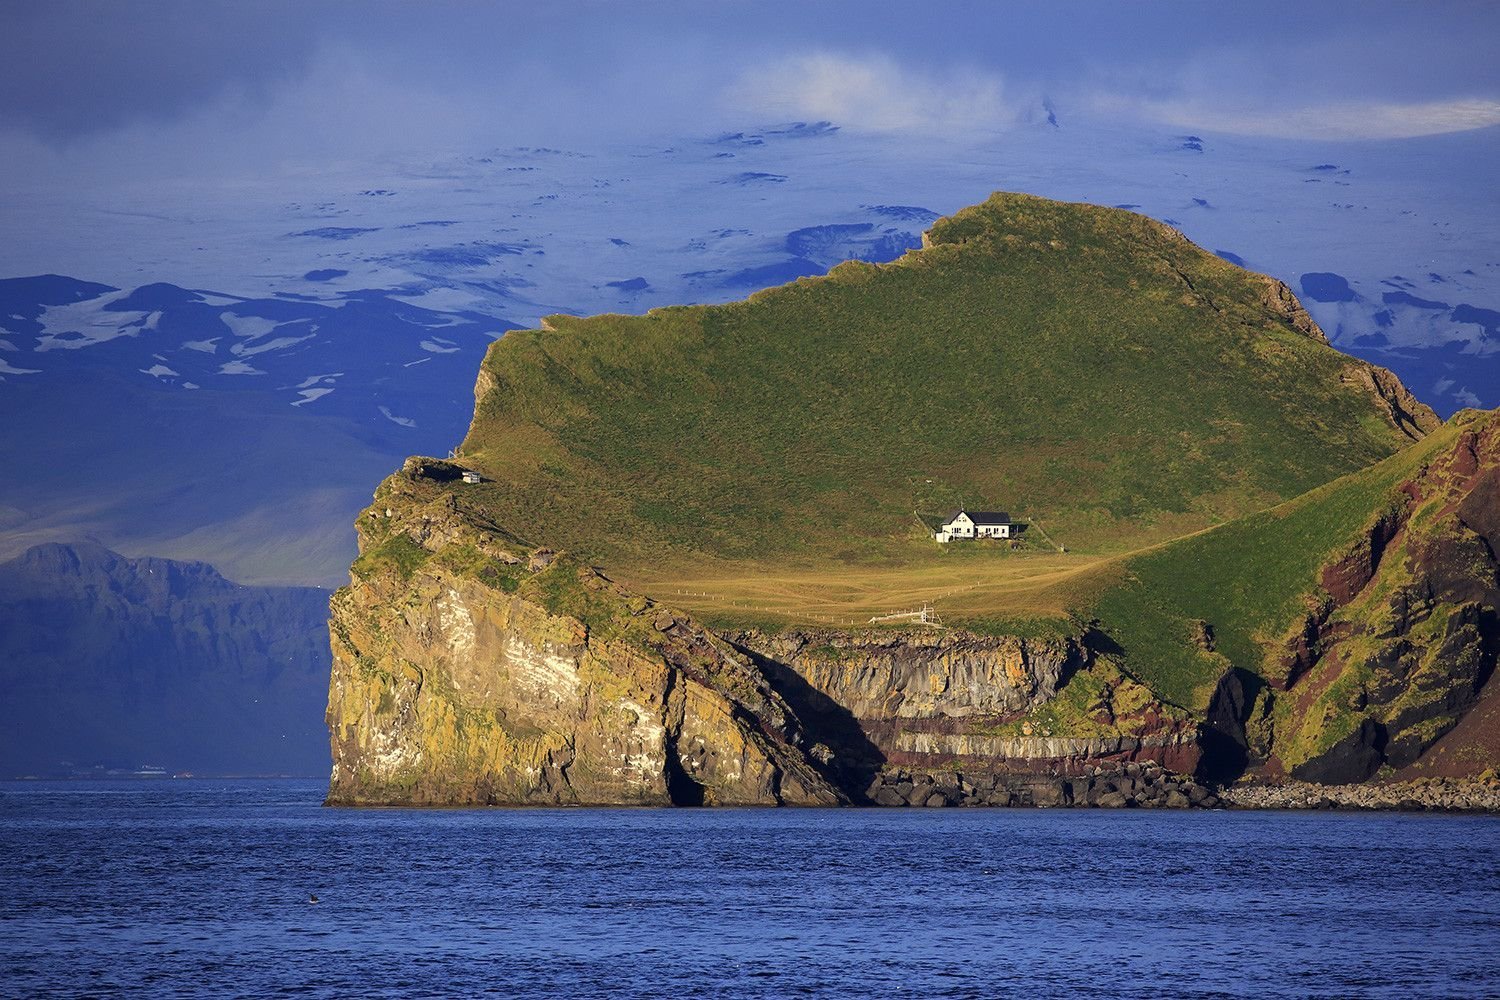 Остров Эллидаэй Исландия. Остров Эдлидаэй в Исландии. Одинокий дом на острове Эллидаэй Исландия. Остров Вестманнаэйяр Исландия. Island место